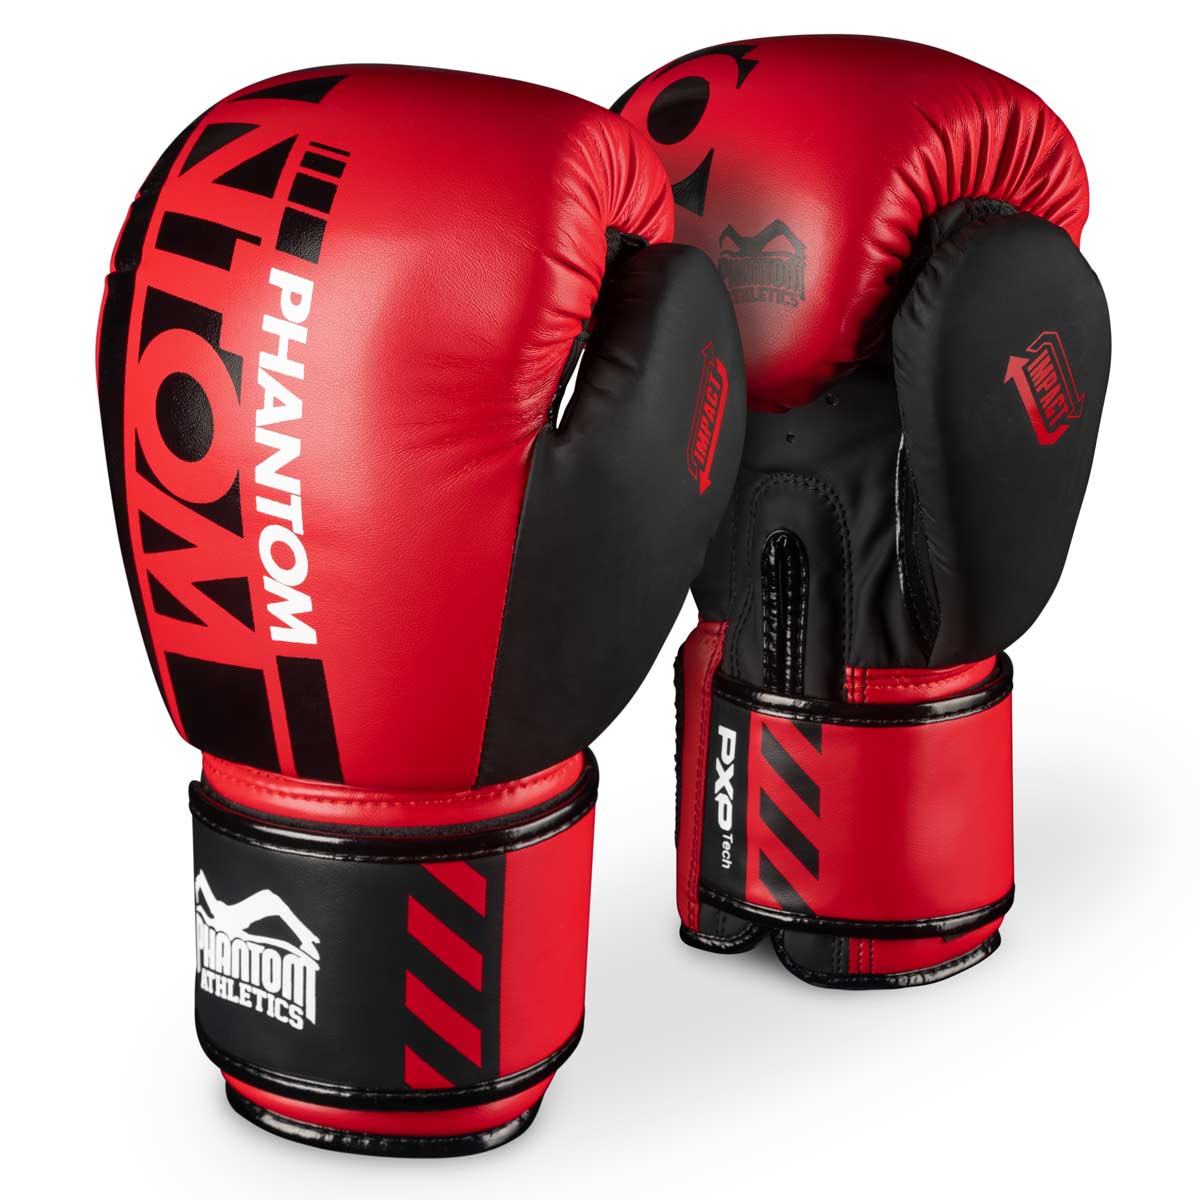 Gants de boxe Phantom APEX dans l'édition limitée RED. Gants parfaits pour vos entraînements d'arts martiaux comme le MMA, le Muay Thai, la boxe thaïlandaise, le K1 ou la boxe.